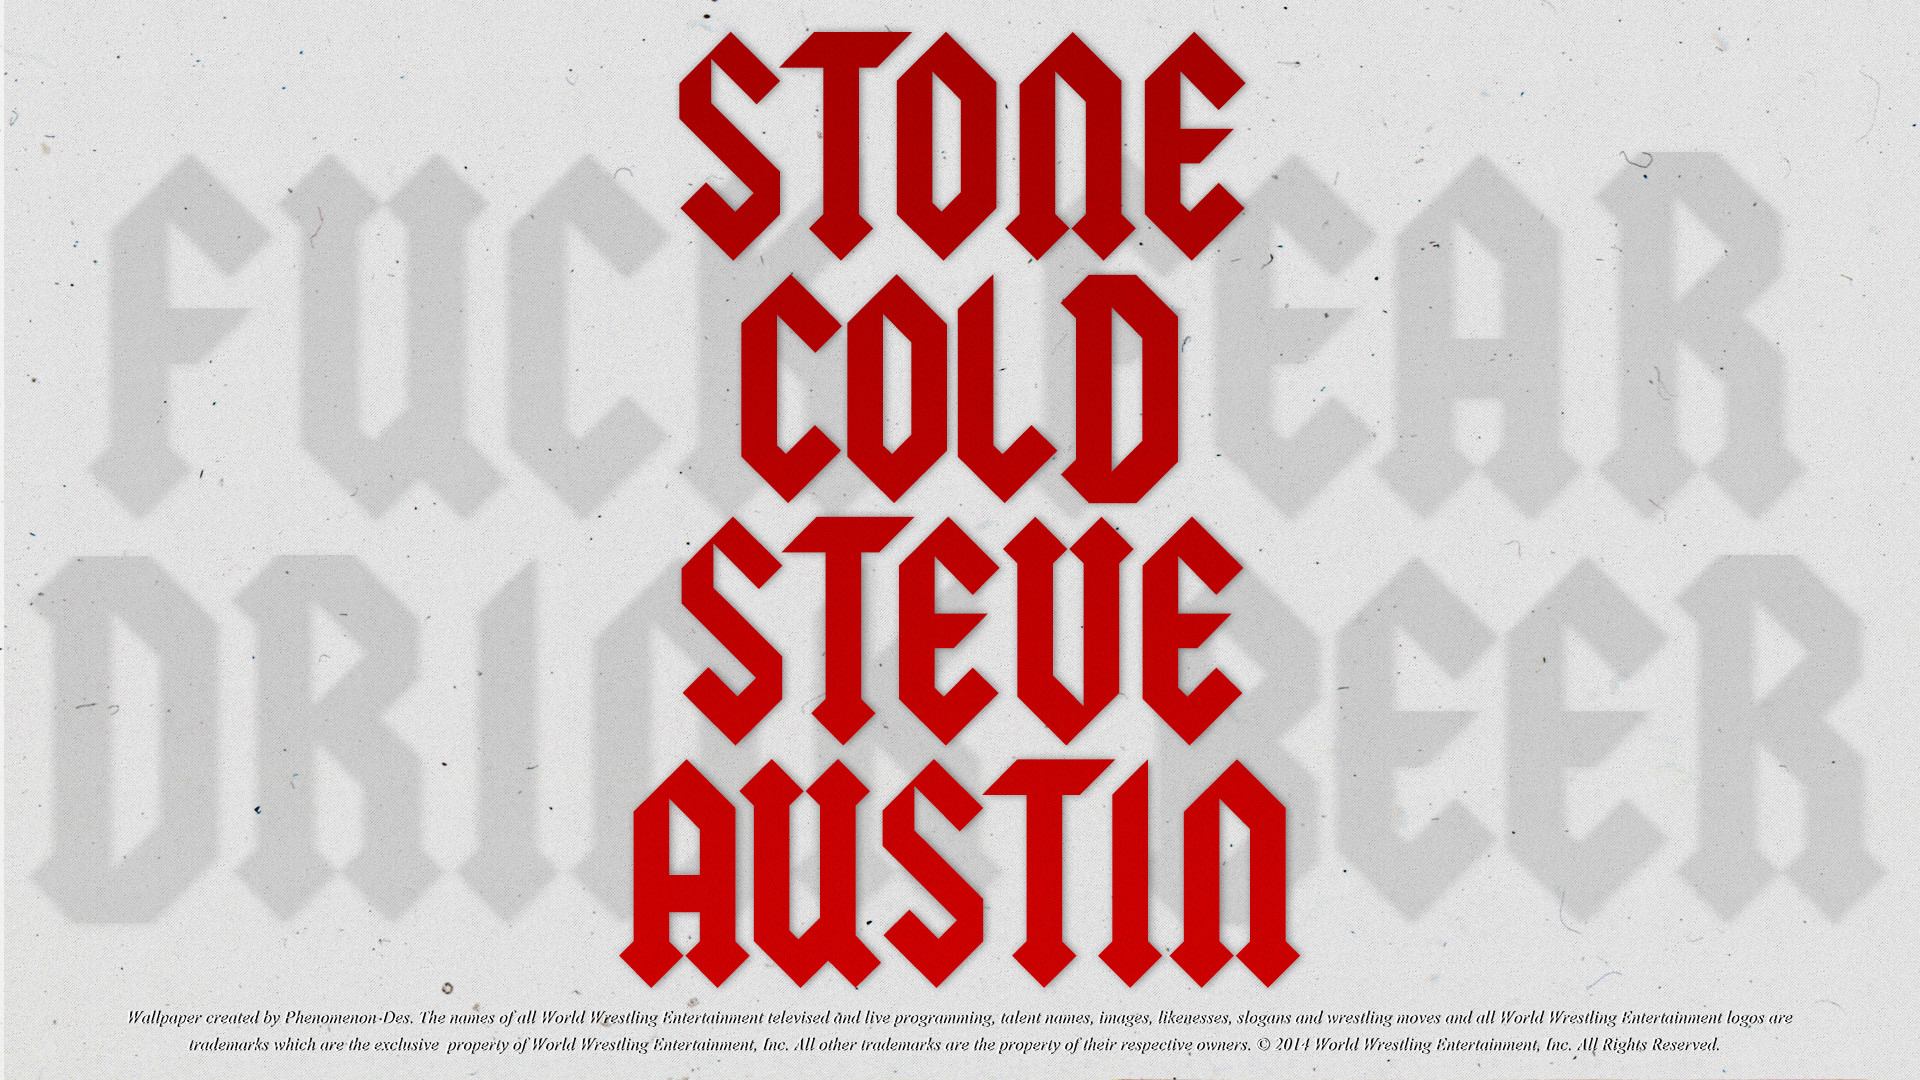 1920x1080 ... WWE Stone Cold Steve Austin Wallpaper by Phenomenon-Des